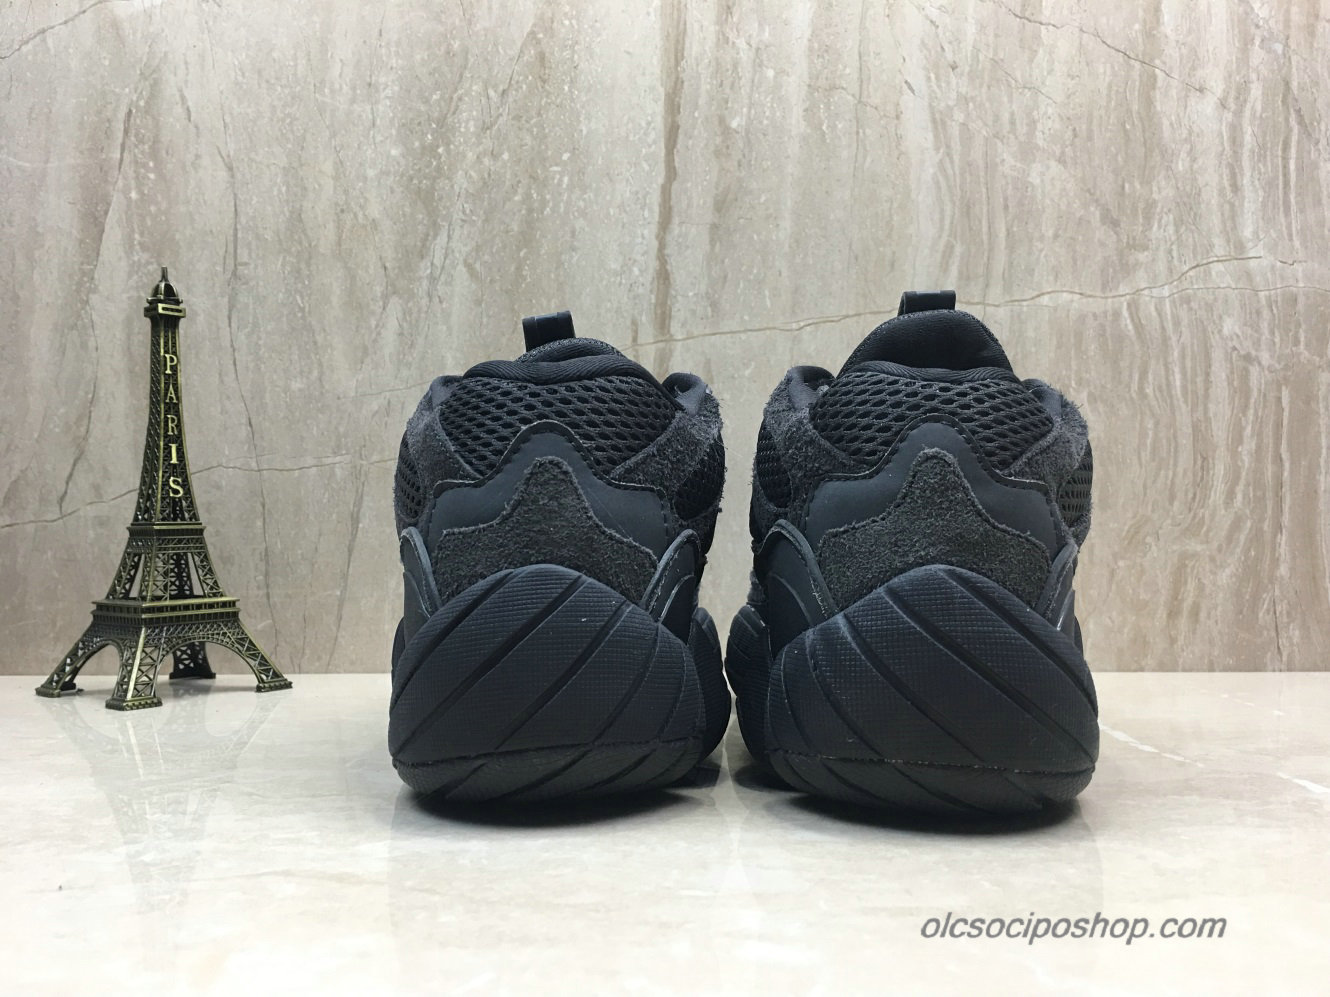 Adidas Yeezy Desert Rat 500 Blush Fekete Cipők (F36640) - Kattintásra bezárul